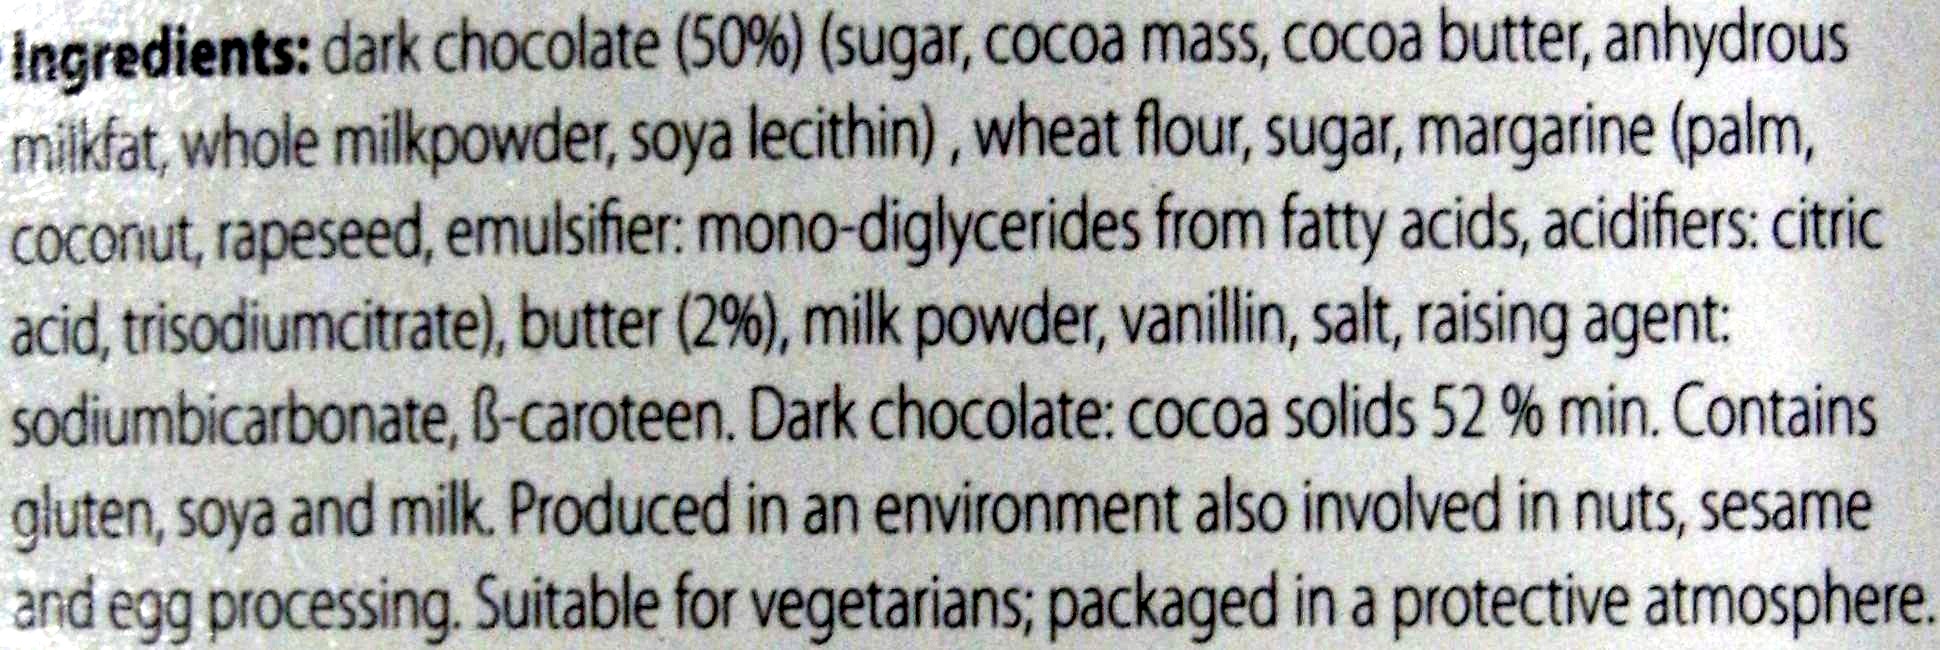 Memoires dark chocolate hearts - Ingredients - en